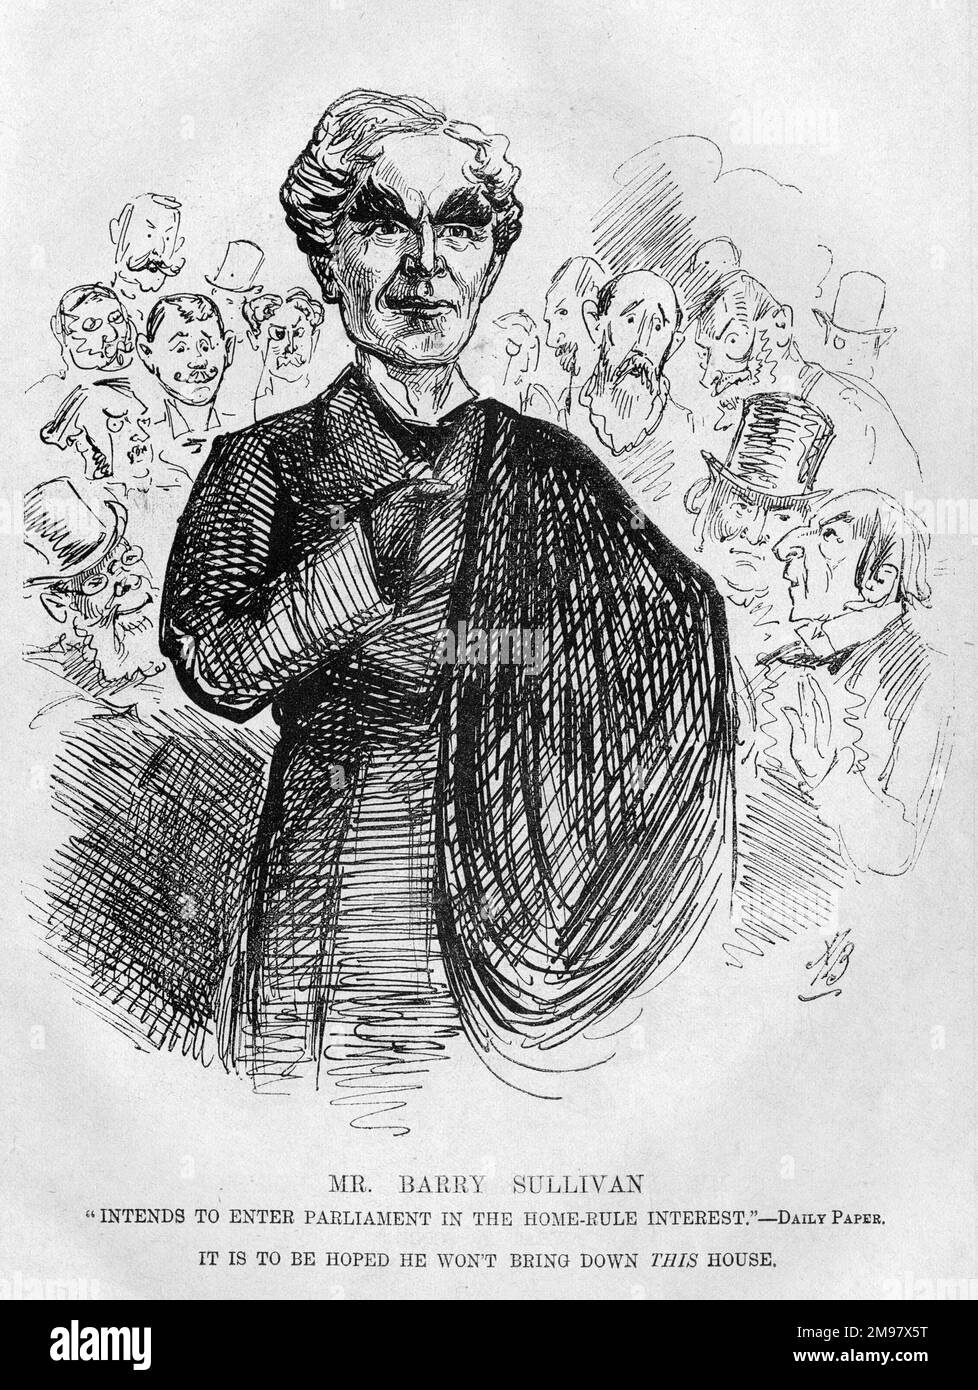 Caricatura de Barry Sullivan (1821-1891), actor inglés de ascendencia irlandesa que interpretó muchas partes clásicas. En 1882 aceptó ser nominado para el Parlamento por una circunscripción irlandesa sobre los principios de la Regla Interior. Foto de stock